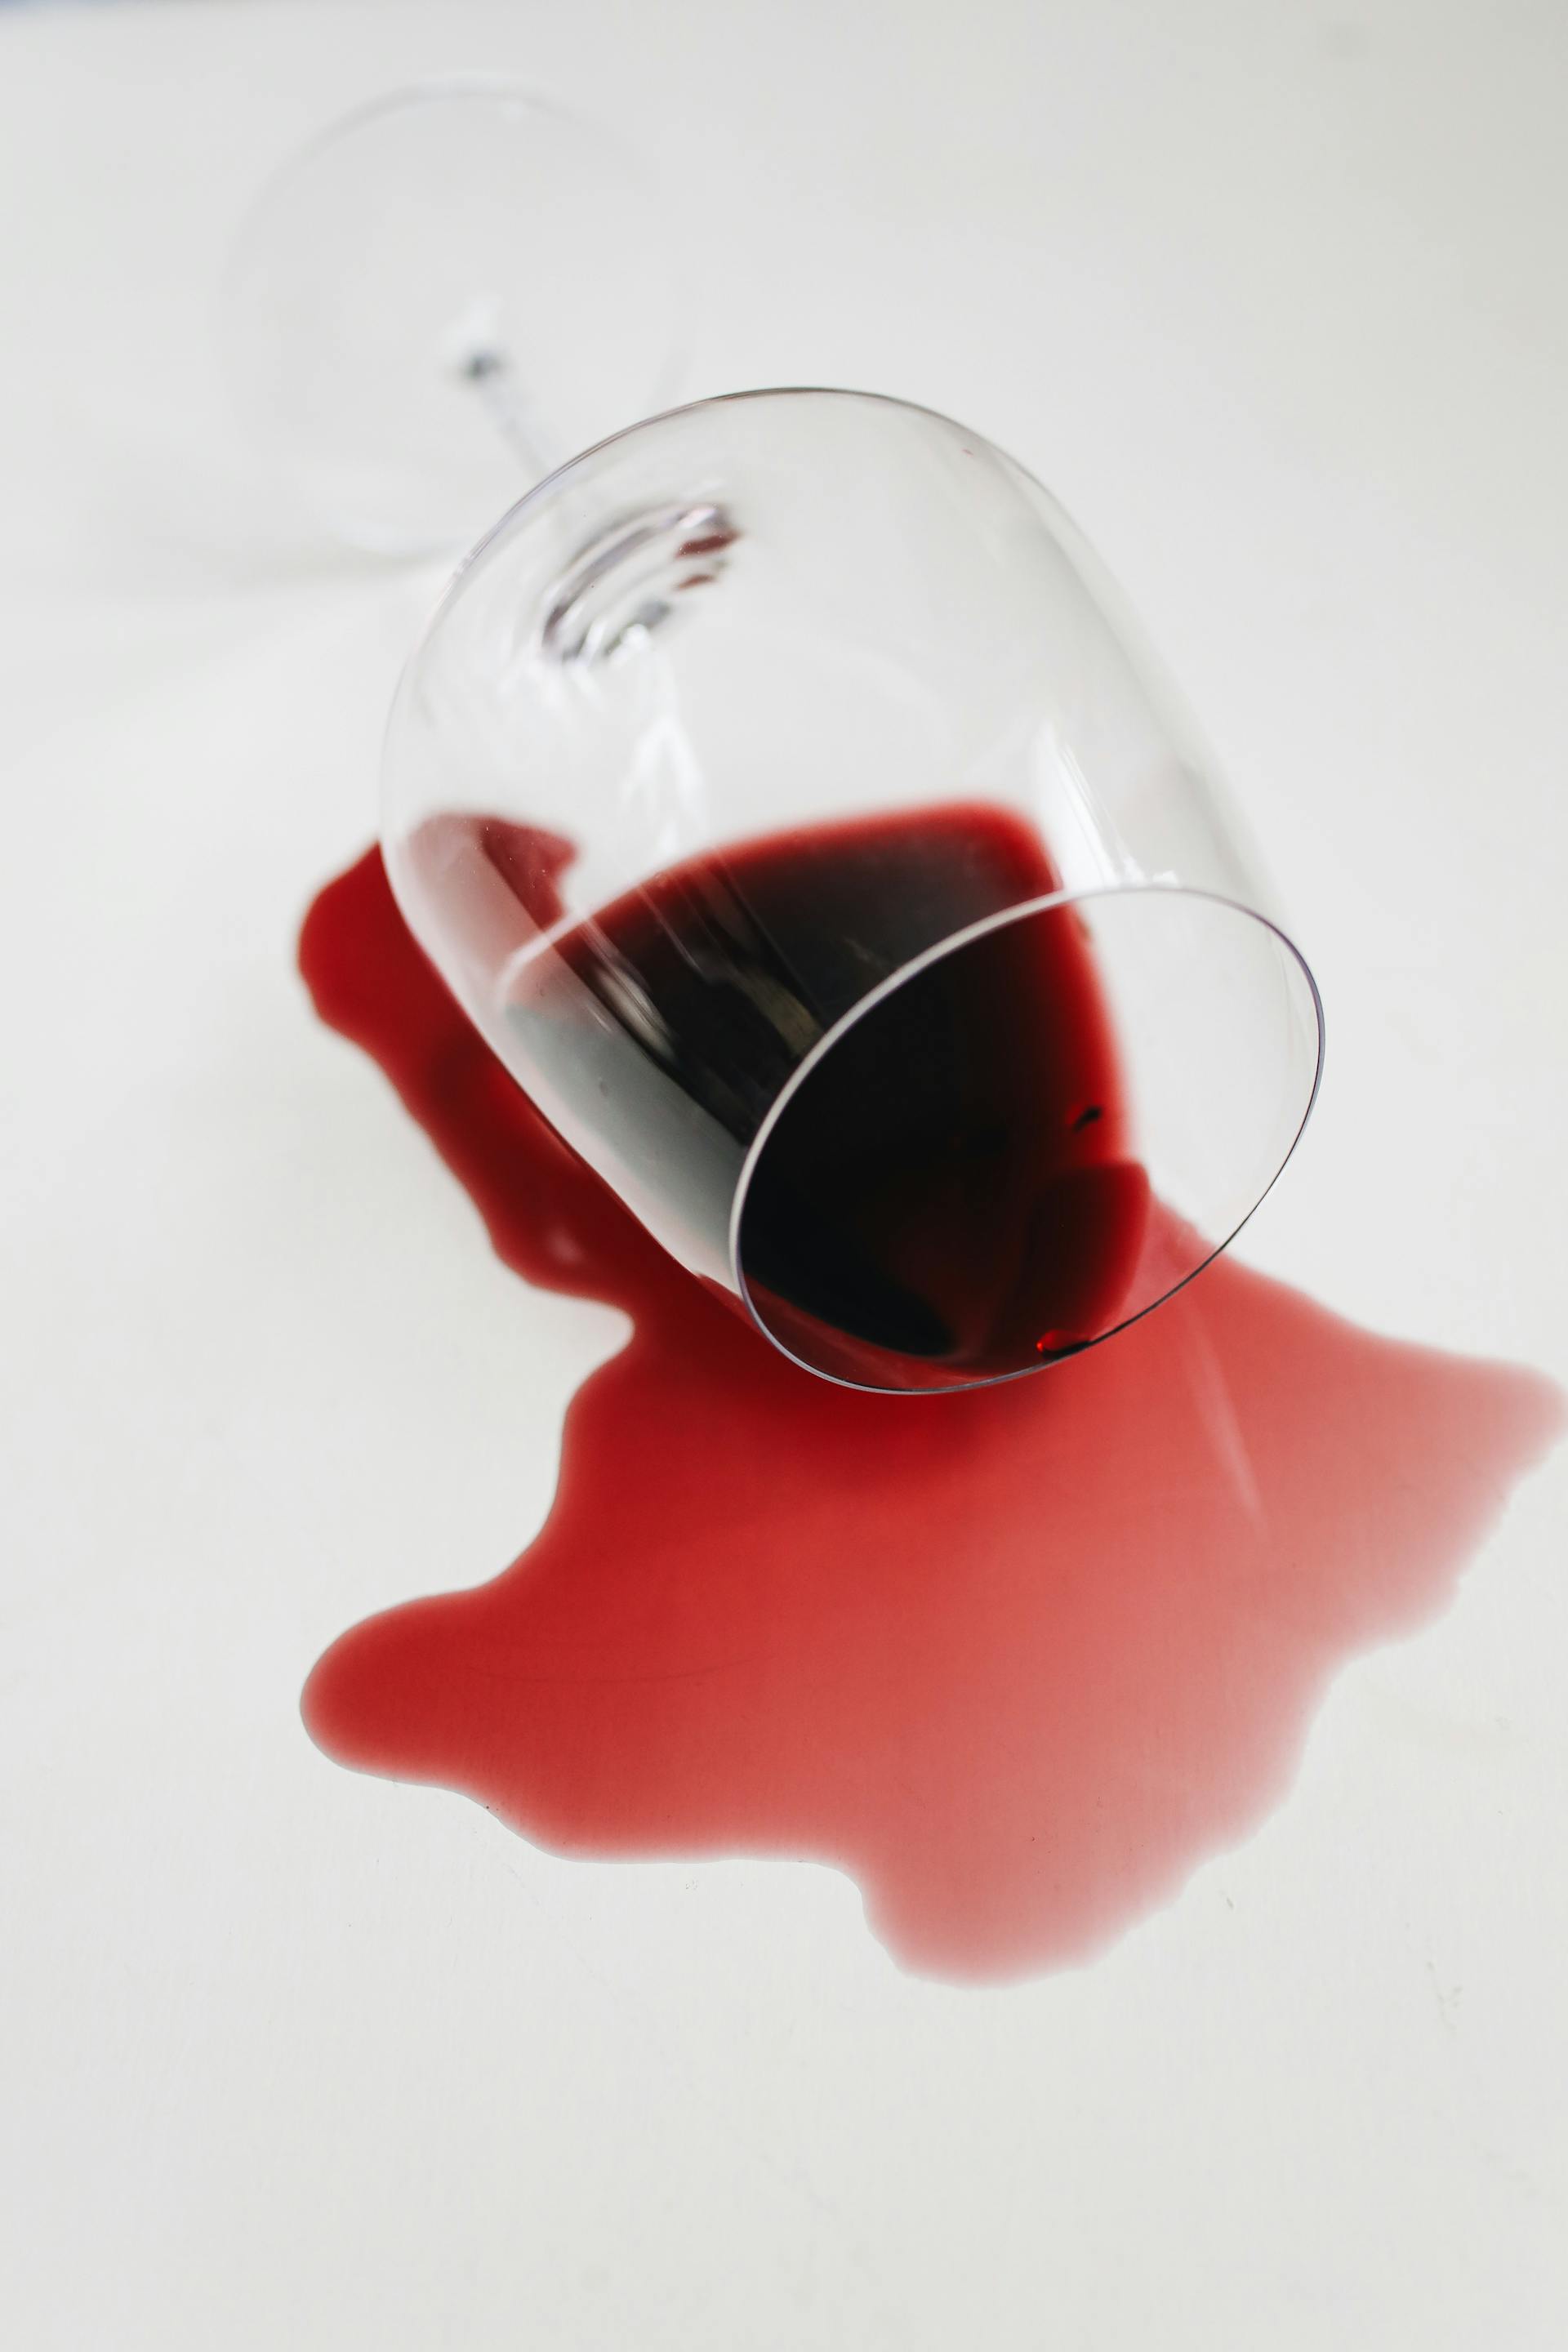 Vin rouge renversé d'un verre | Source : Pexels